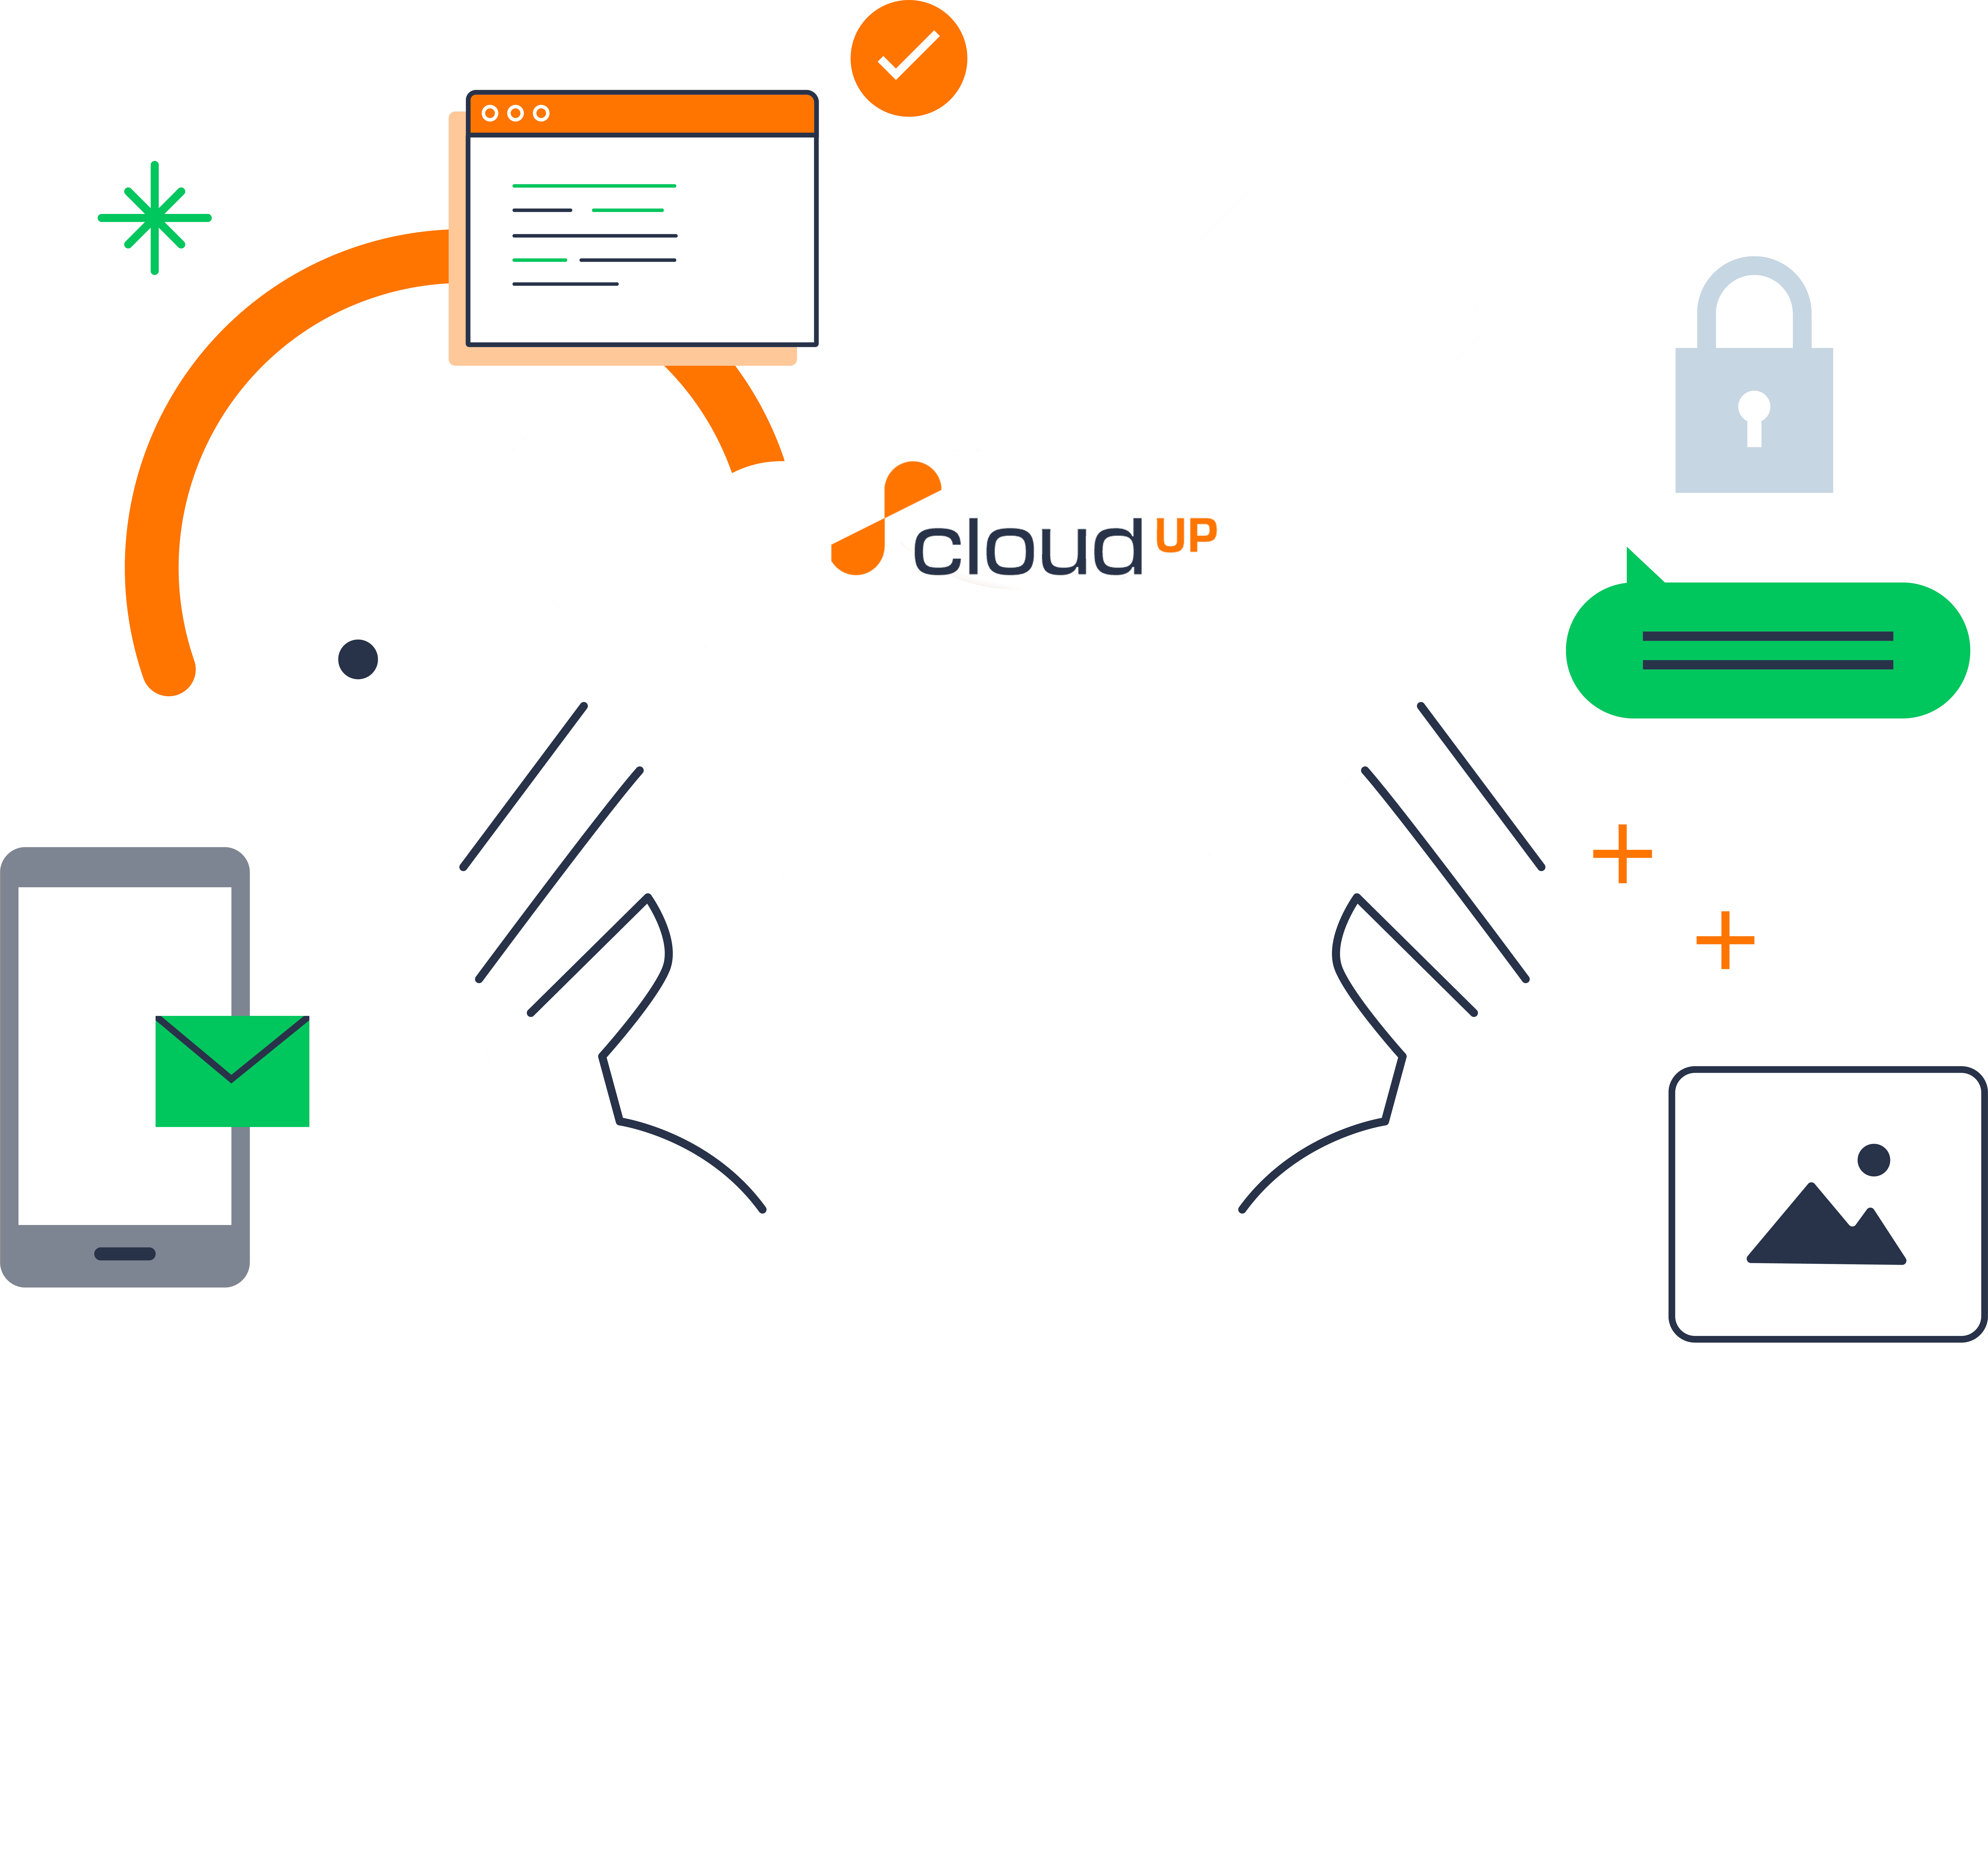 Manos sosteniendo una nube con el texto "cloudUP" rodeado de íconos que representan varios elementos tecnológicos, como un candado, un teléfono inteligente y mensajes.